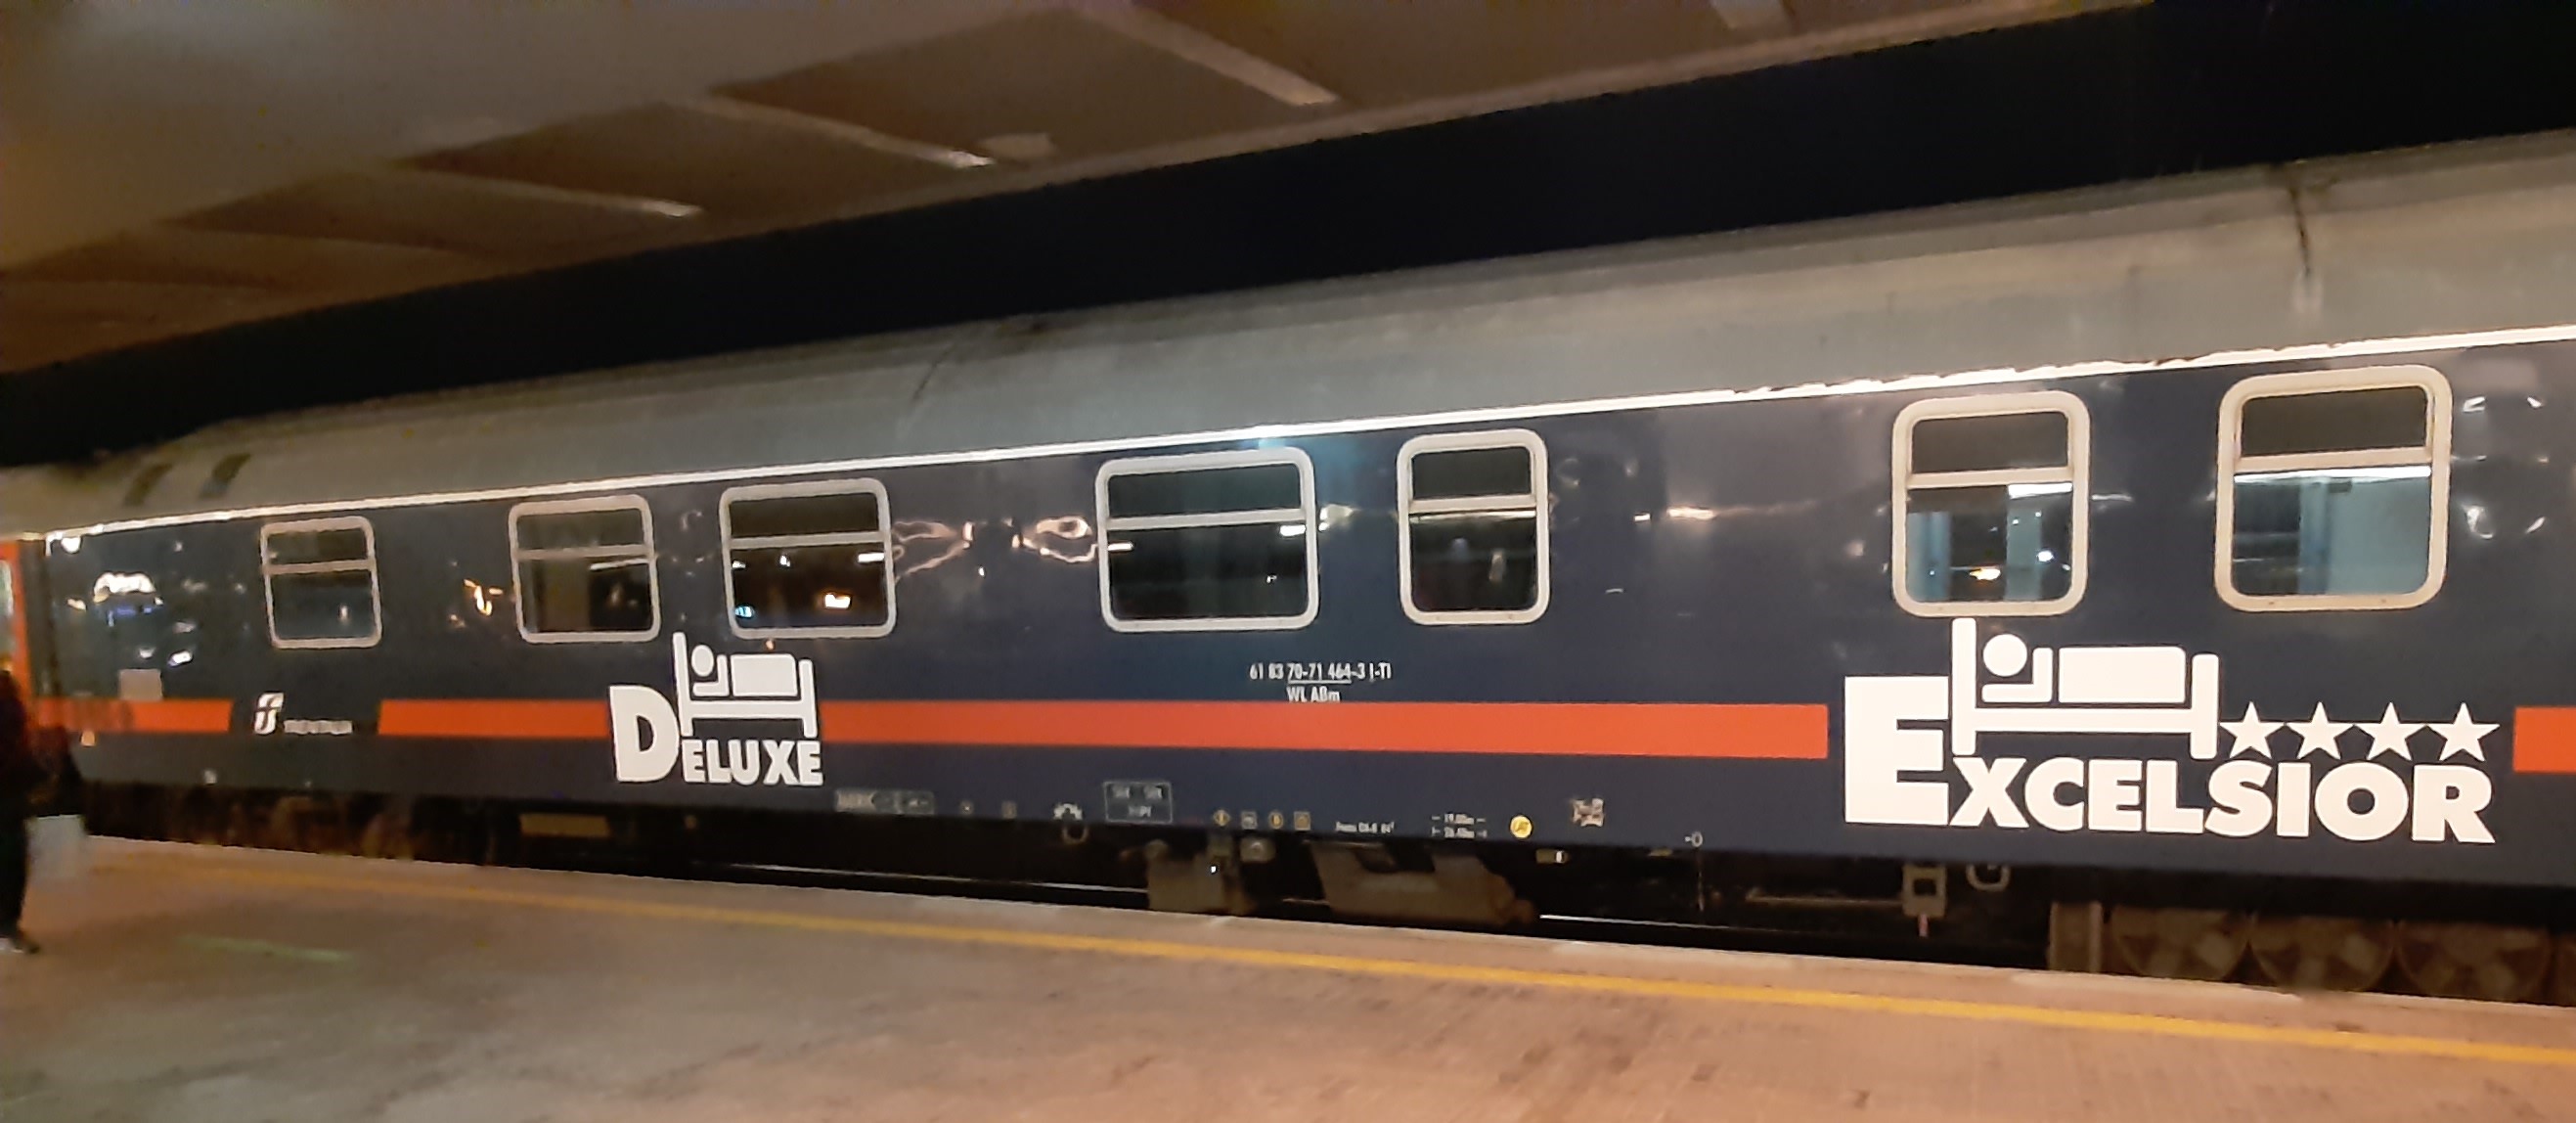 Train de nuit Rome Exelsior Banquette c Discovery Trains